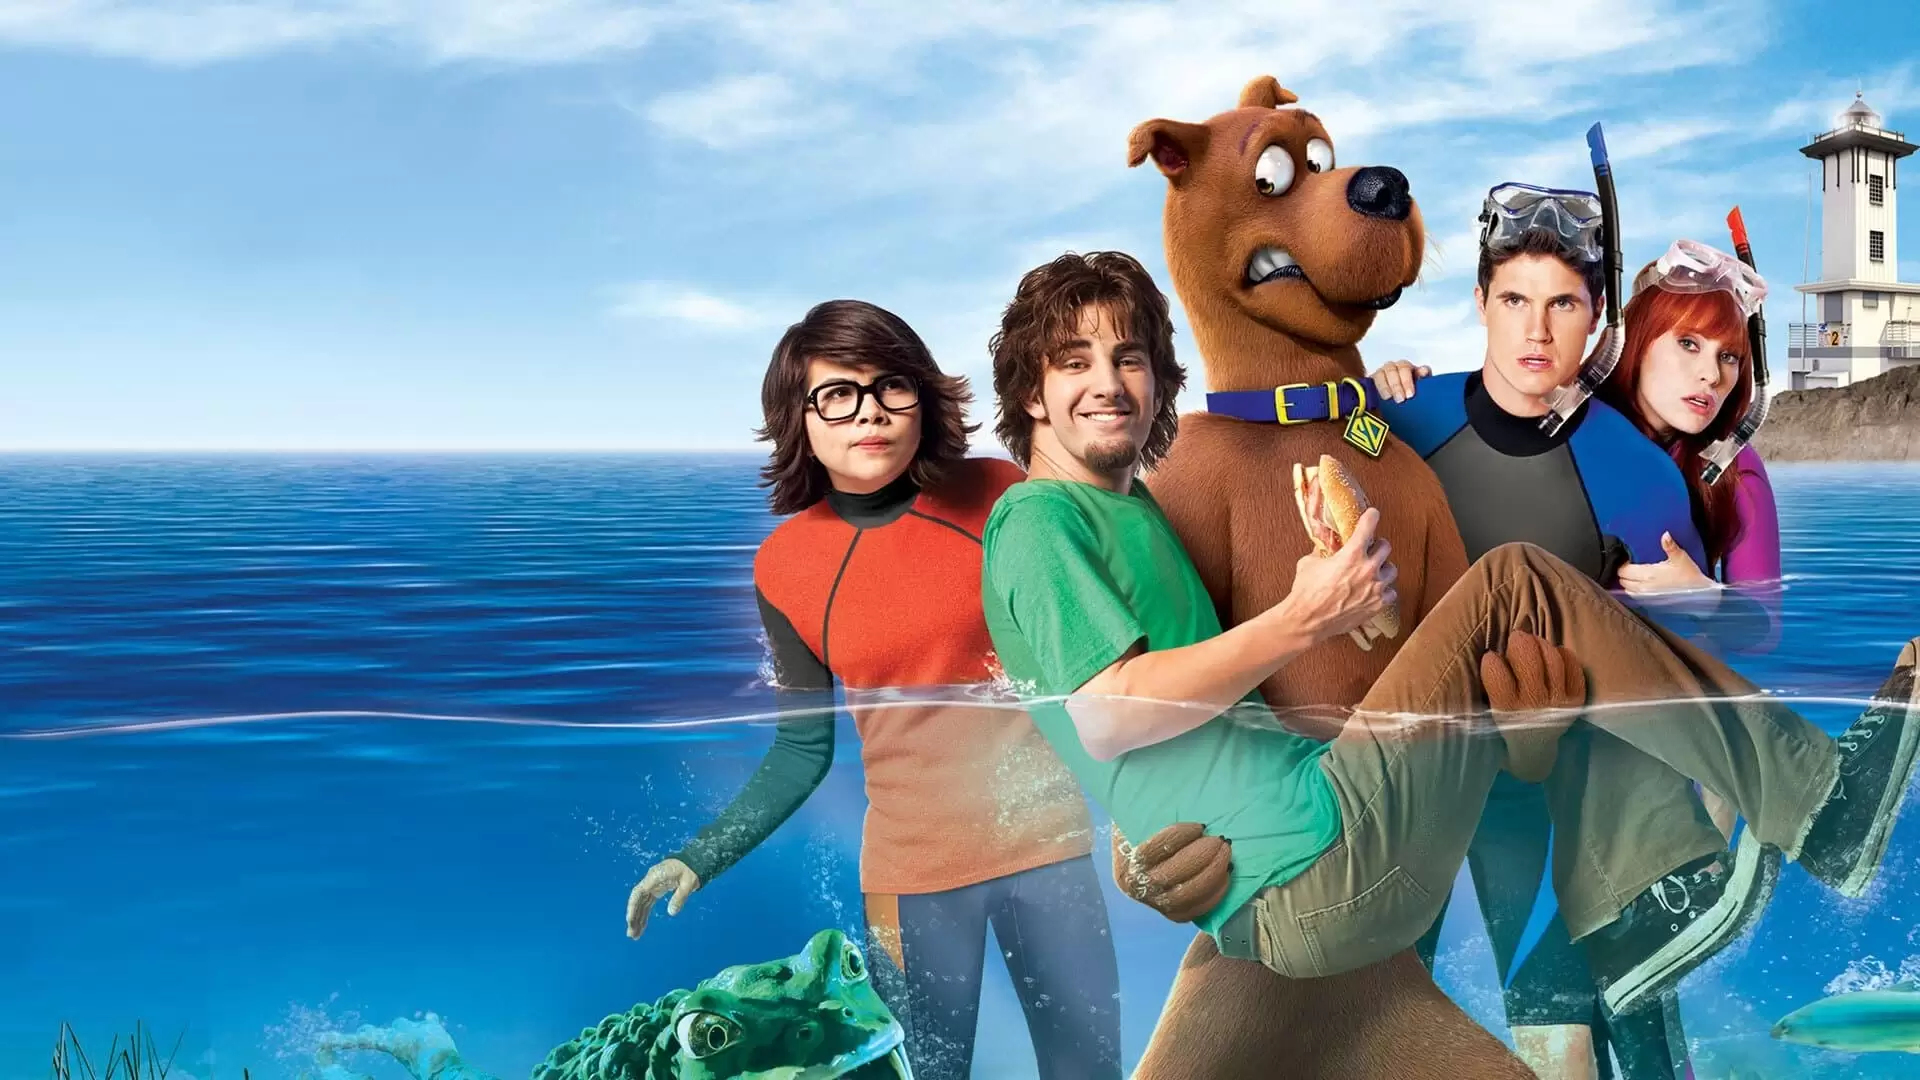 دانلود انیمیشن Scooby-Doo! Curse of the Lake Monster 2010 (اسکوبی دوو نفرین هیولای دریاچه) با زیرنویس فارسی و تماشای آنلاین